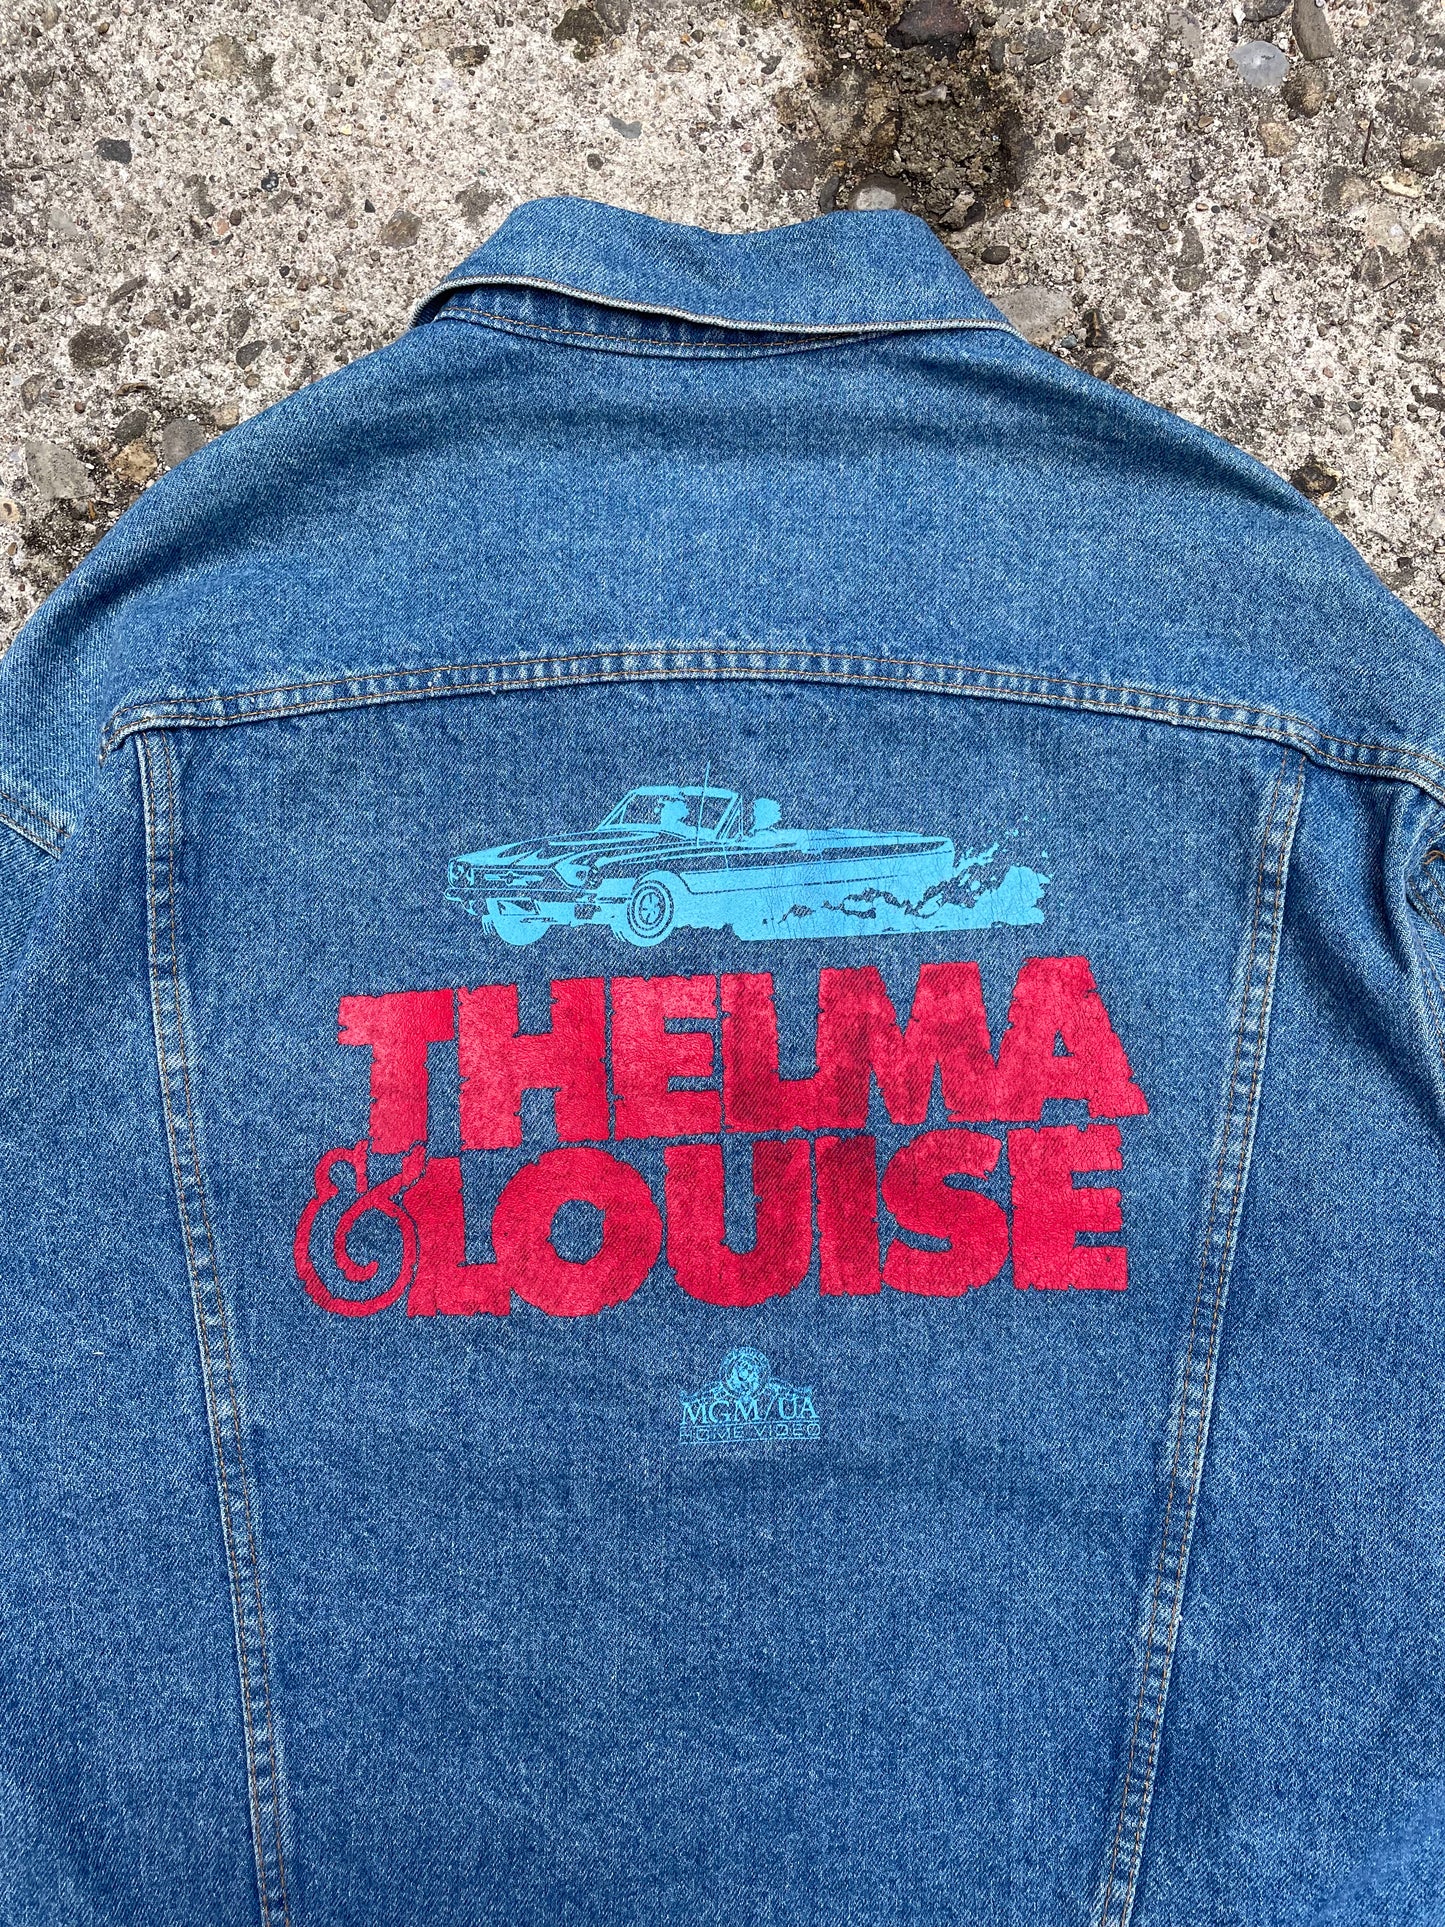 1991 Thelma & Louise Movie Promo Denim Jacket - XL